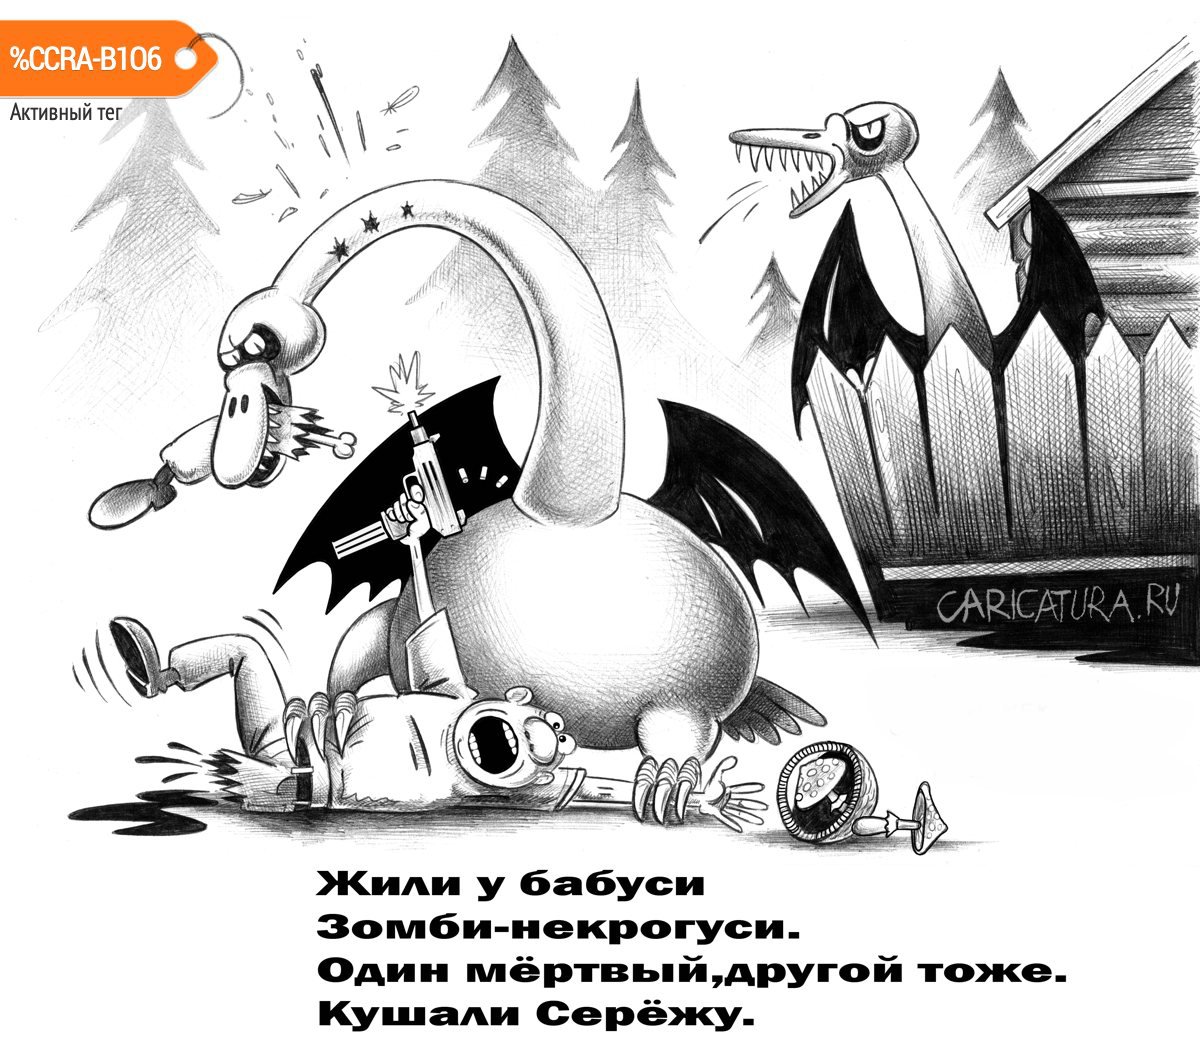 Карикатура "Жили у бабуси", Сергей Корсун